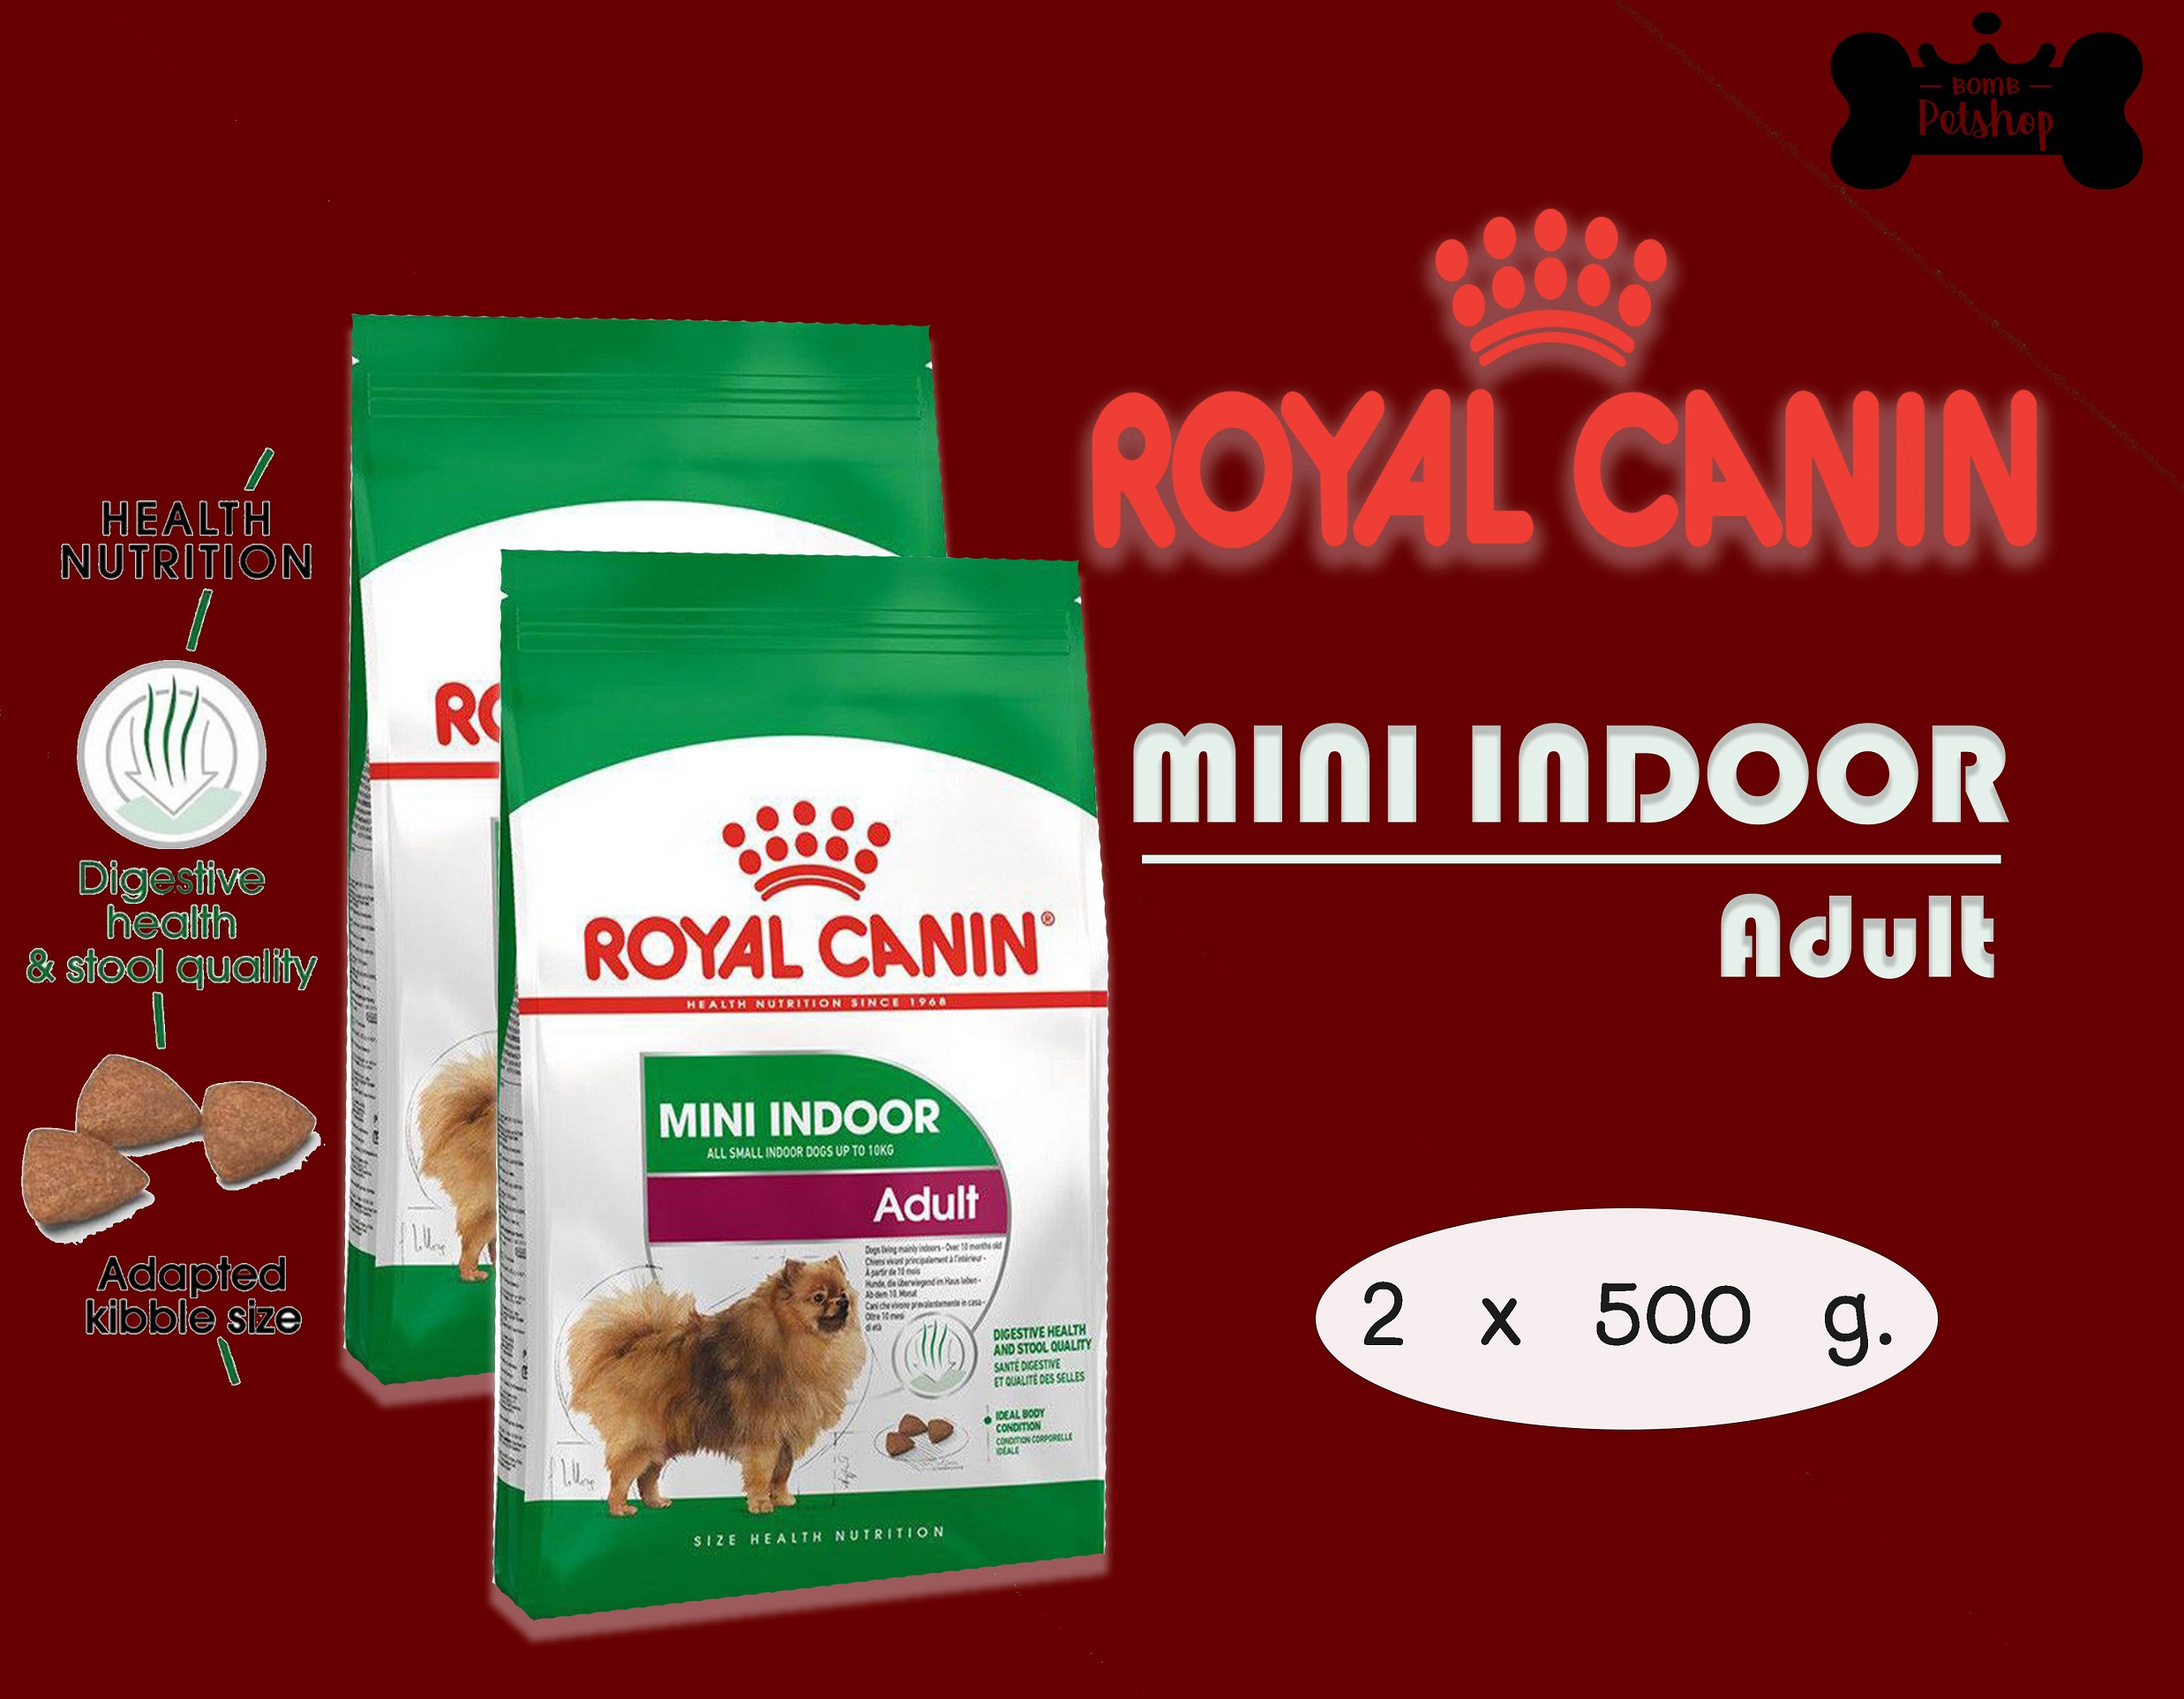 Royal Canin Mini Indoor Adult โรยัล คานิน อาหารสุนัขโต เลี้ยงในบ้าน ขนาด 500g x 2 ถุง